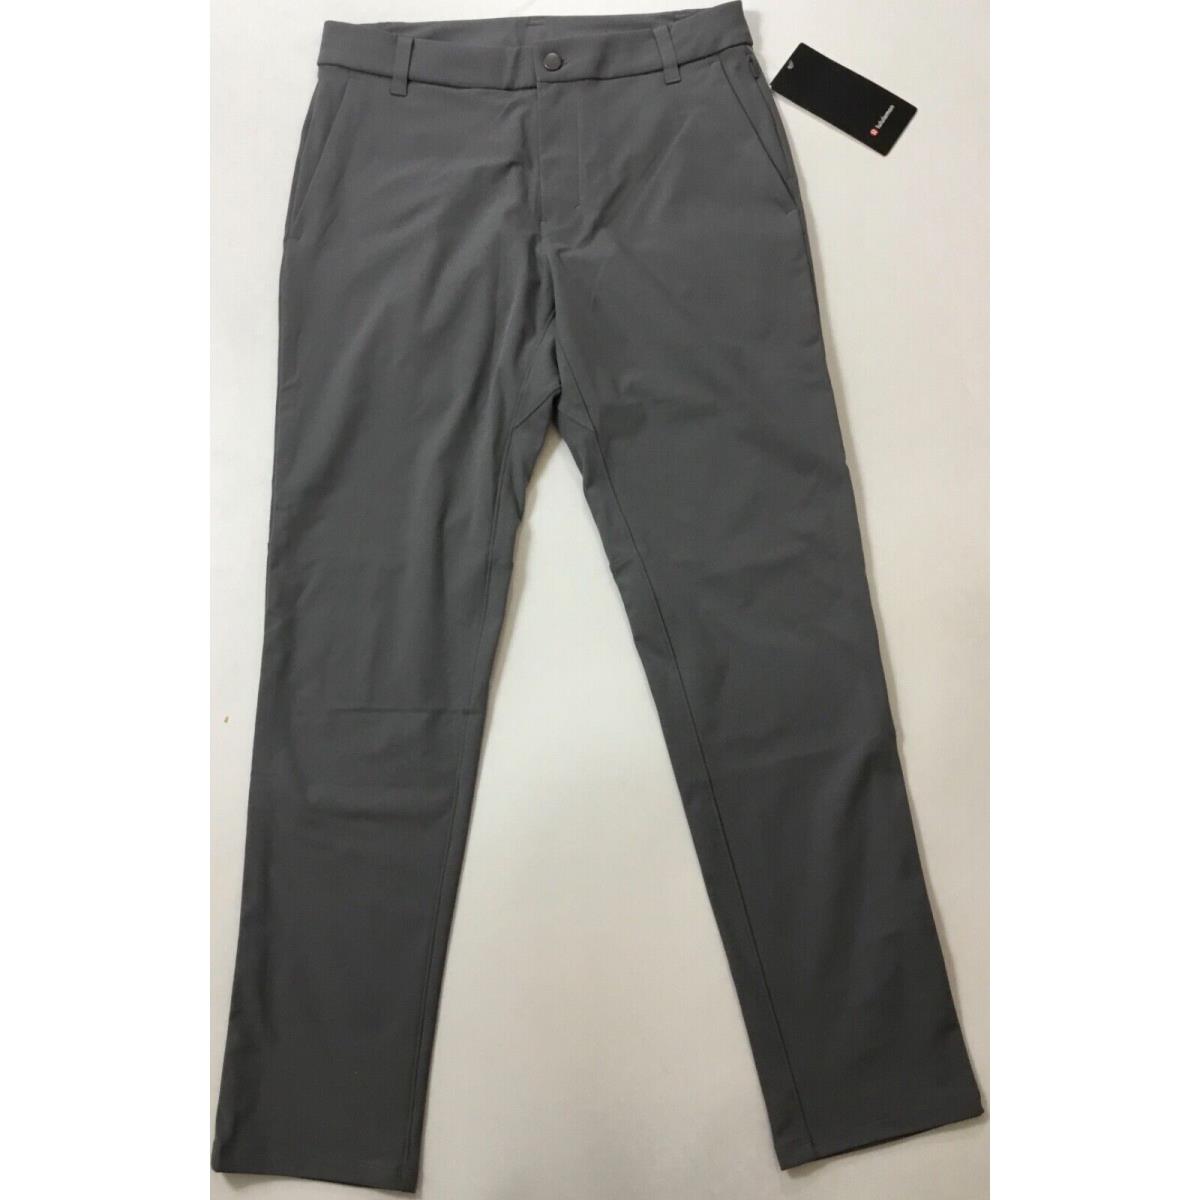 Lululemon Men Commission Pant Classic 32 L Short LM5985S Asgy Grey Size 30